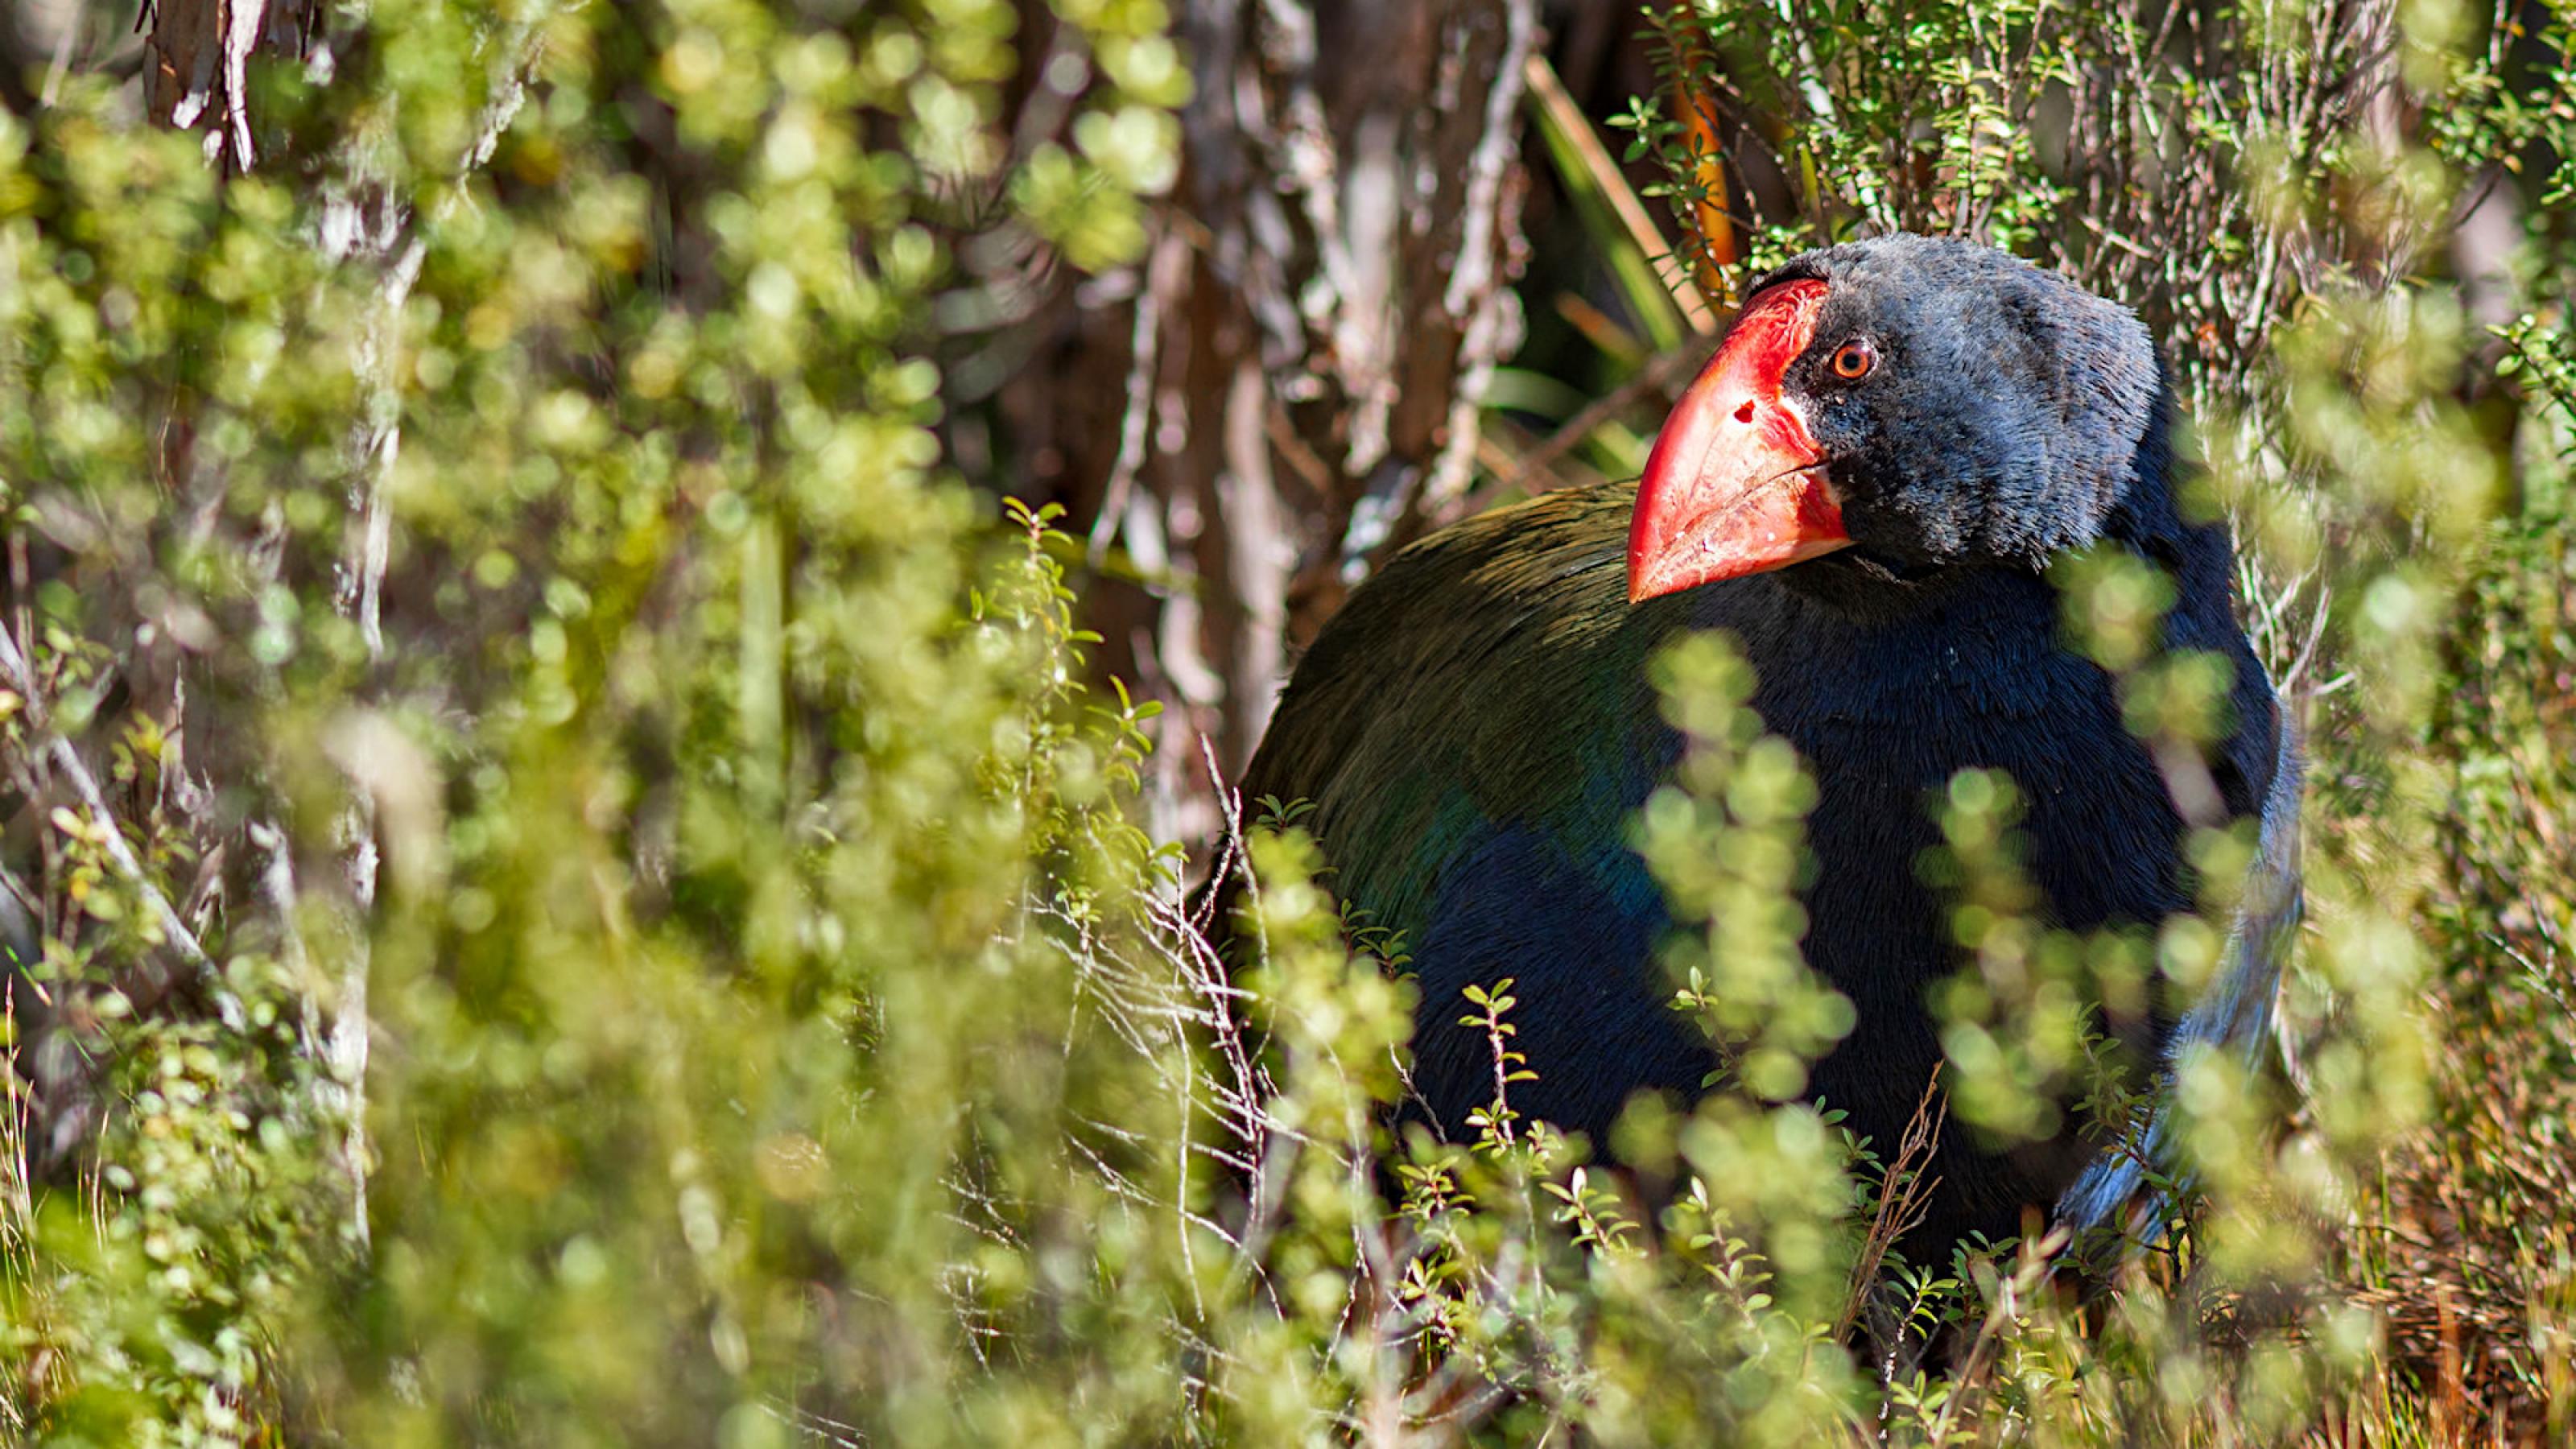 Ein blau-grüner Vogel mit rotem Schnabel ragt zwischen verholzten Kräutern hervor.